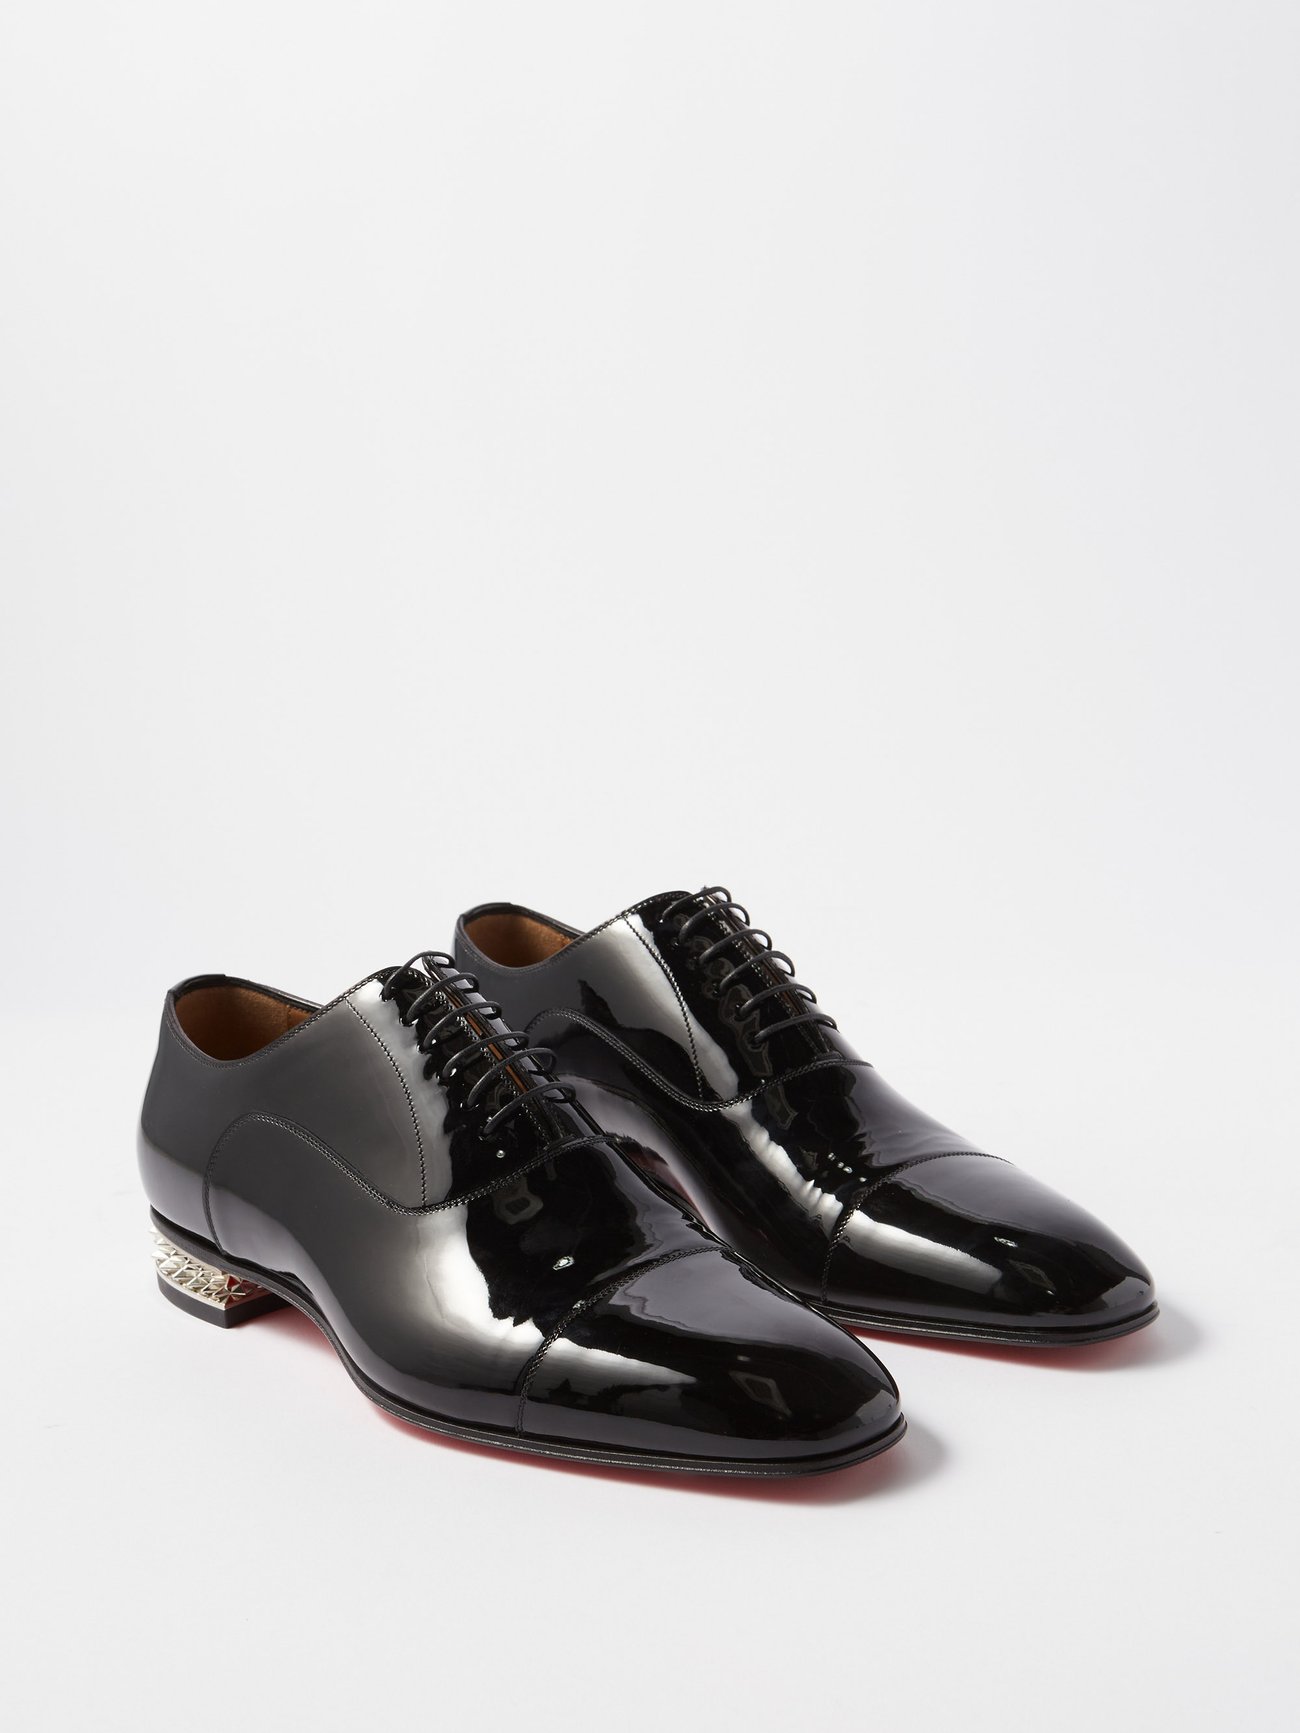 Christian Louboutin Mens Patent Leather Sample Plain Toe Dress Shoes Size  42